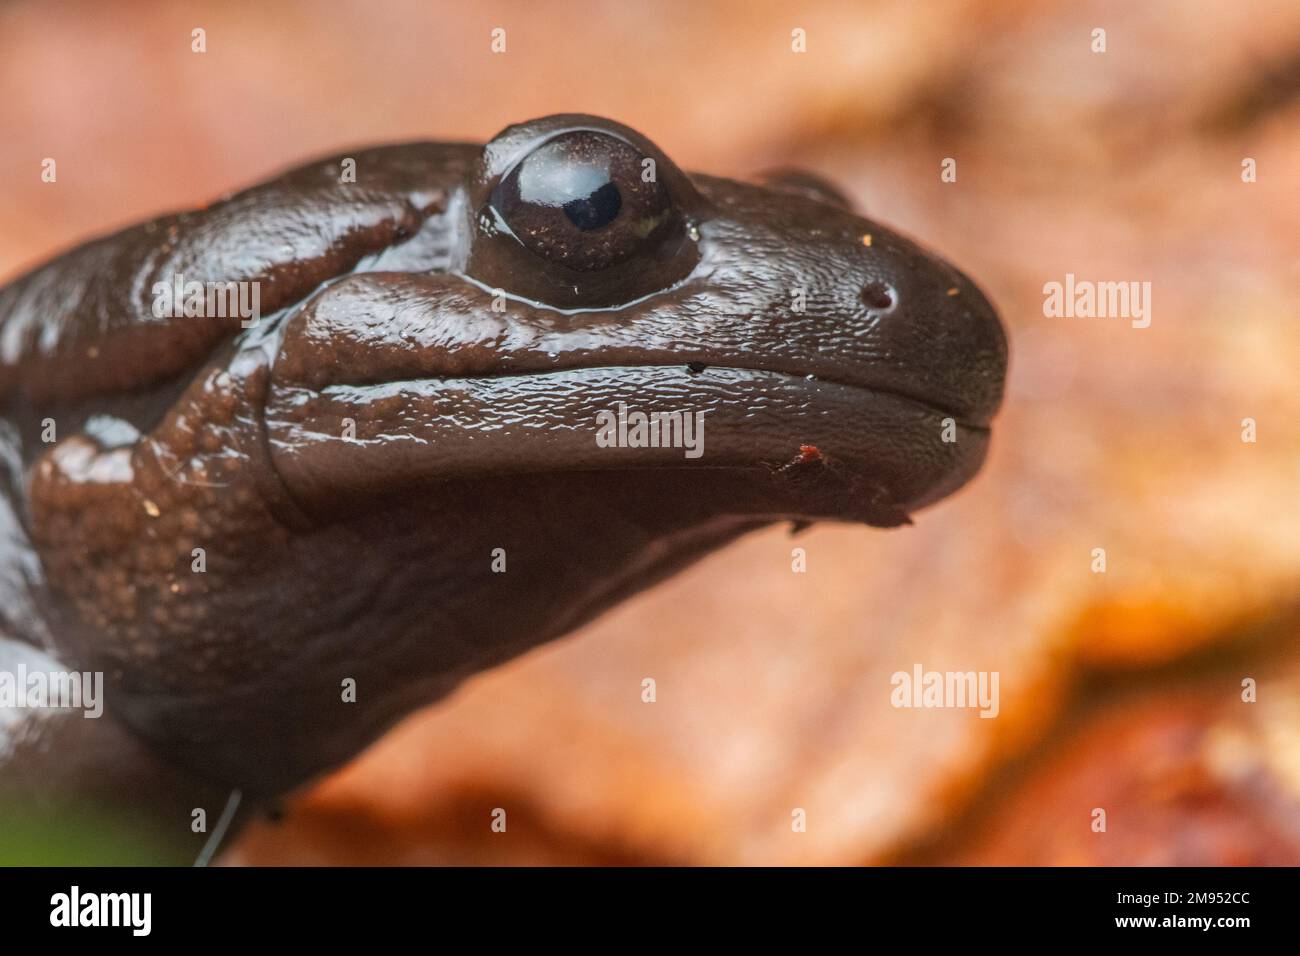 Una salamandra nordoccidentale (Ambystoma gracile), un membro della famiglia delle salamandre mole sul pavimento della foresta nella contea di Mendocino, California, USA. Foto Stock